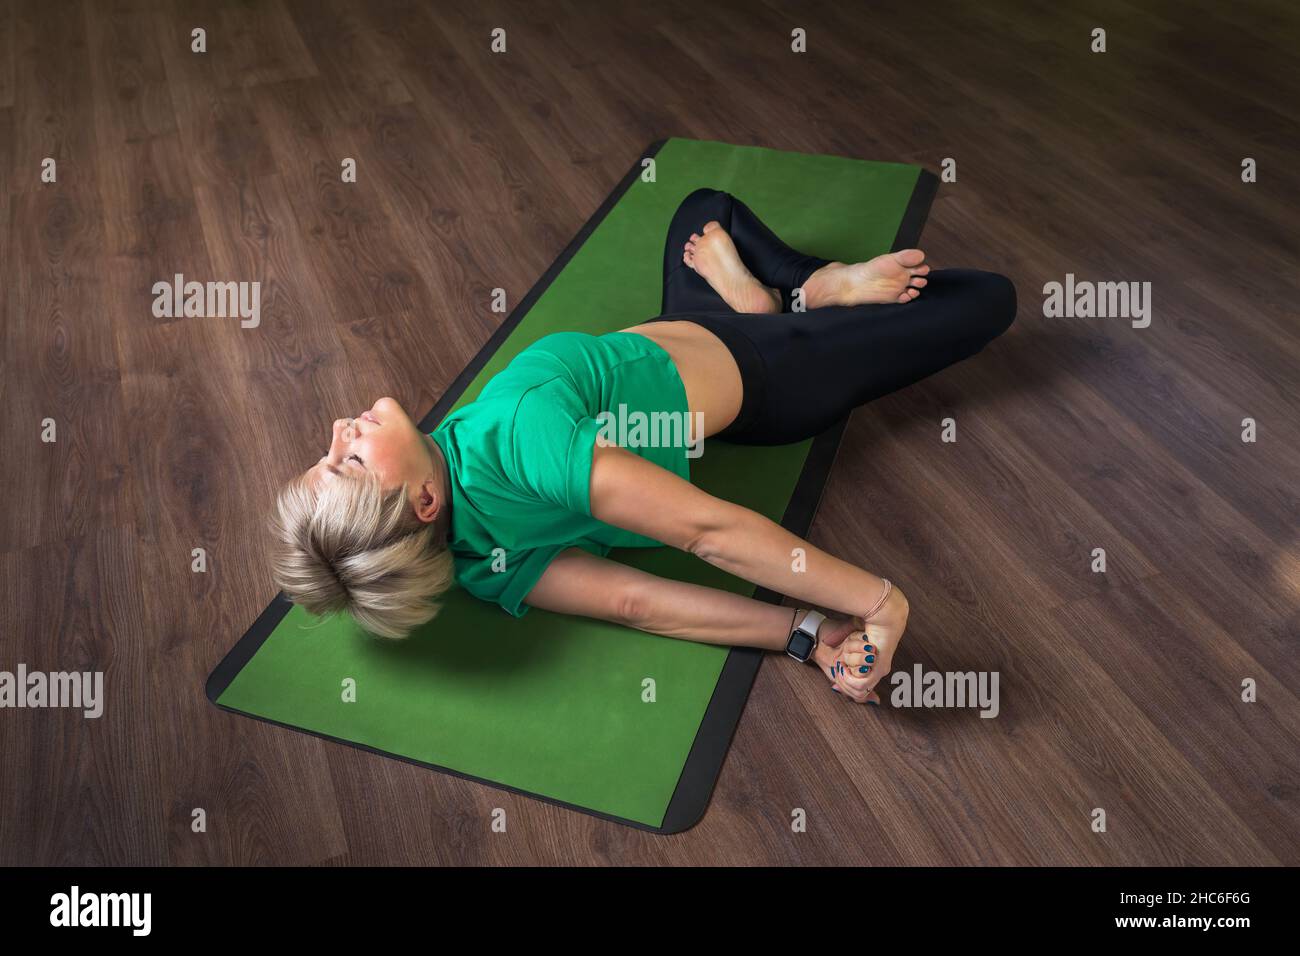 Une femme pratiquant le yoga, faisant l'exercice Eka bhuja swastikasana en pamasana, le bien-être pose sur l'épaule, allongé sur un tapis dans le studio, l'exercice Banque D'Images